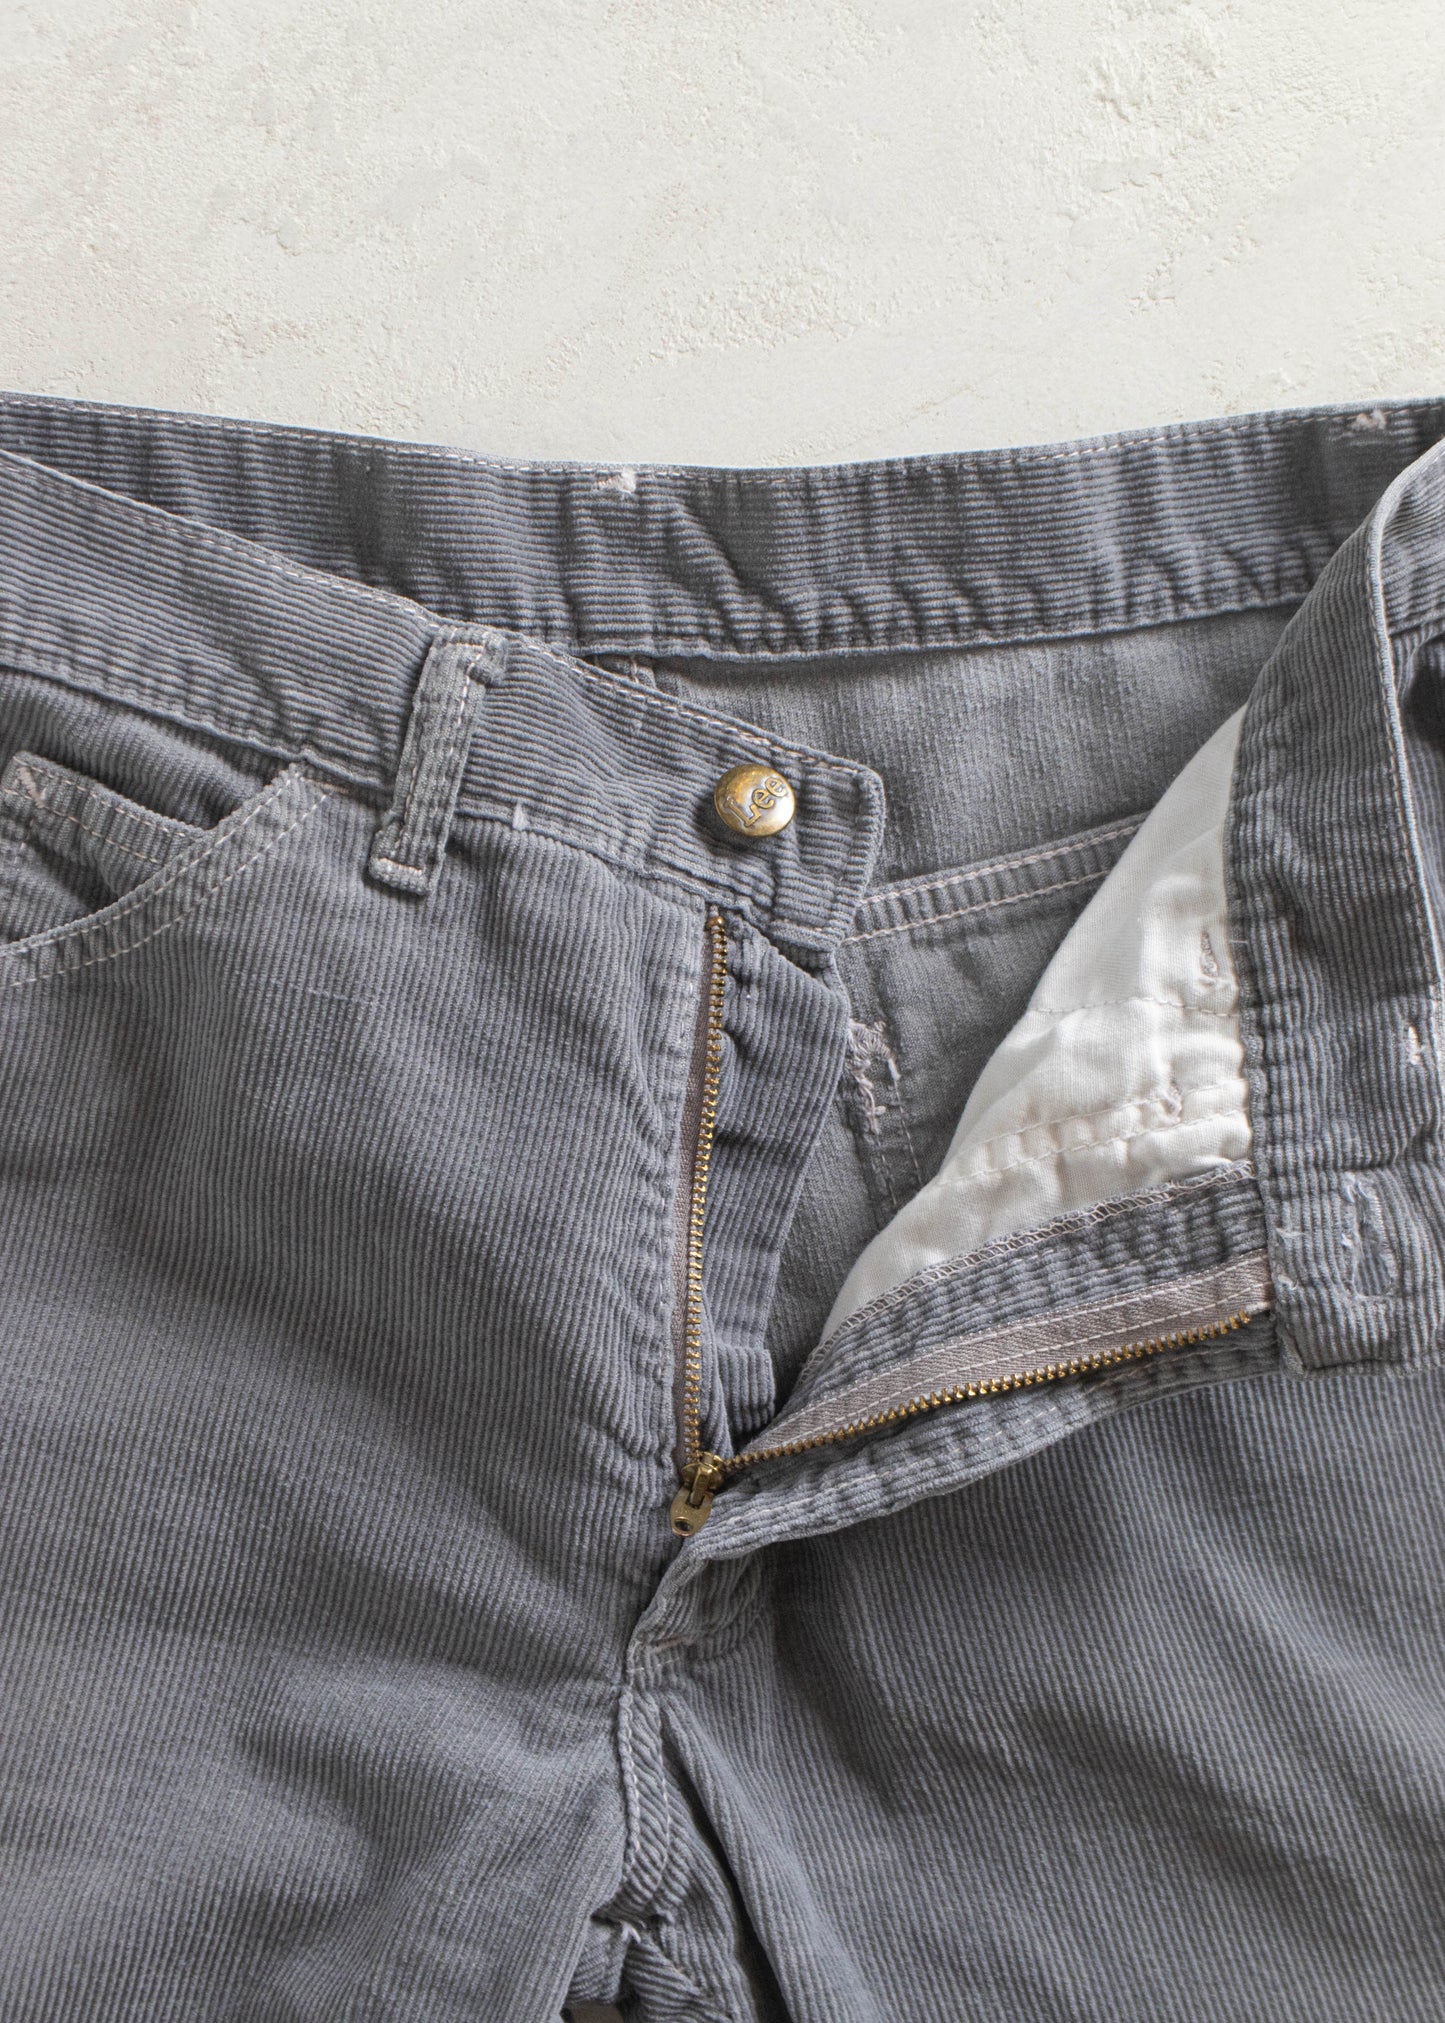 Vintage Lee Flare Corduroy Pants Size Women's 27 Men's 30